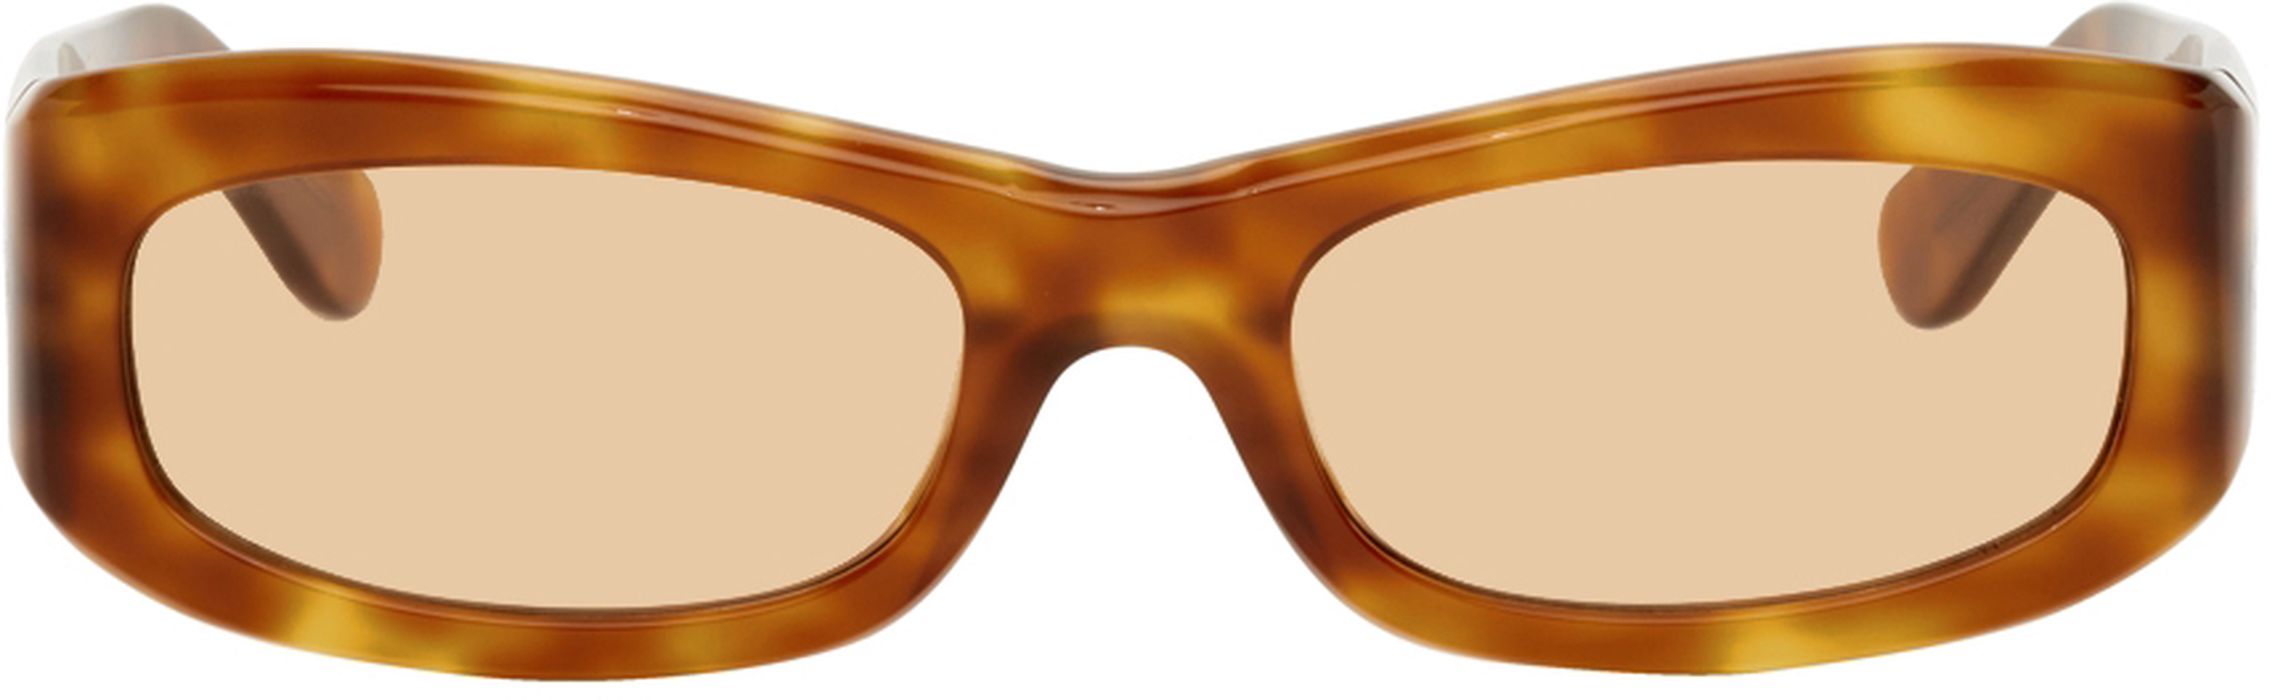 Port Tanger Tortoiseshell Saudade Sunglasses